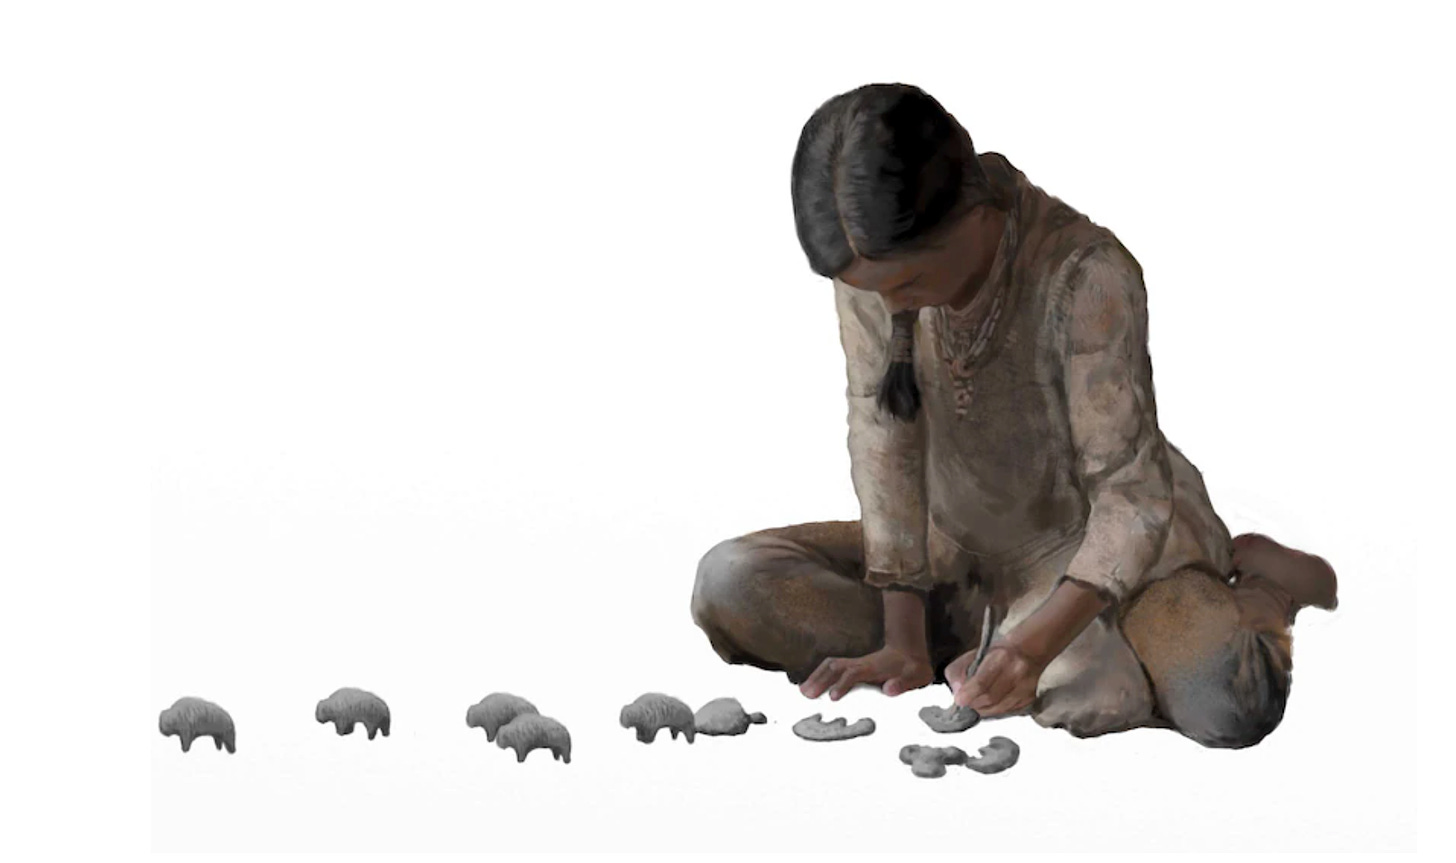 Ilustración en la que se representa a una niña de la prehistoria jugando con pequeños bisontes de piedra